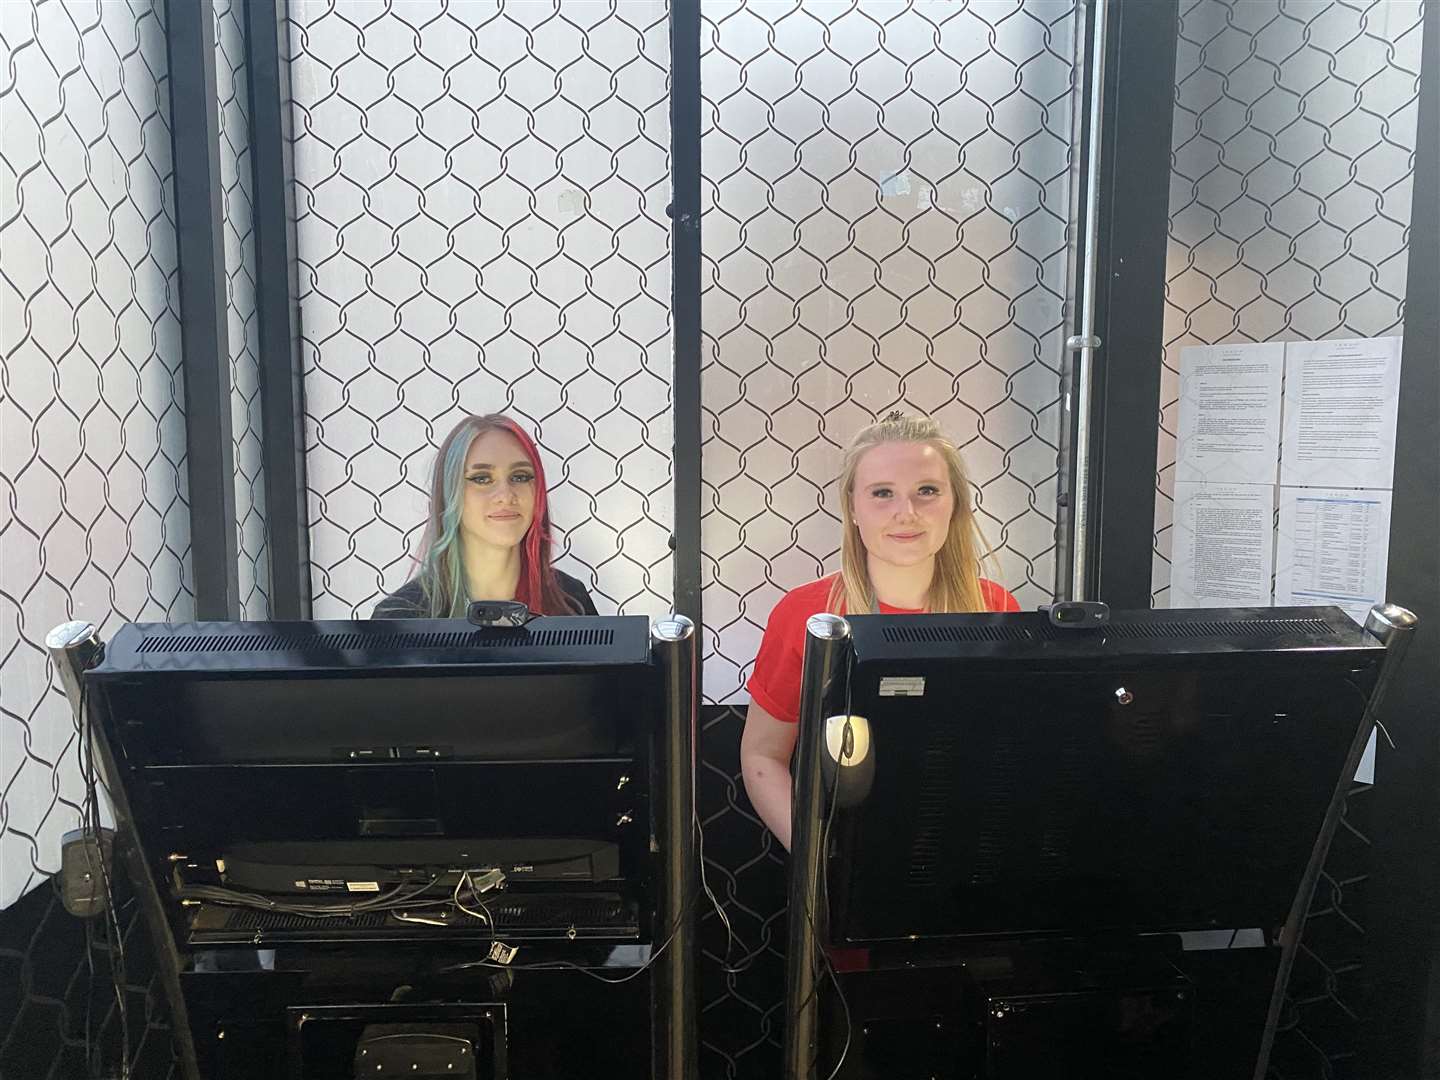 Summer Mitchell and Katrina Fordham checking ID's at ATIK Dartford